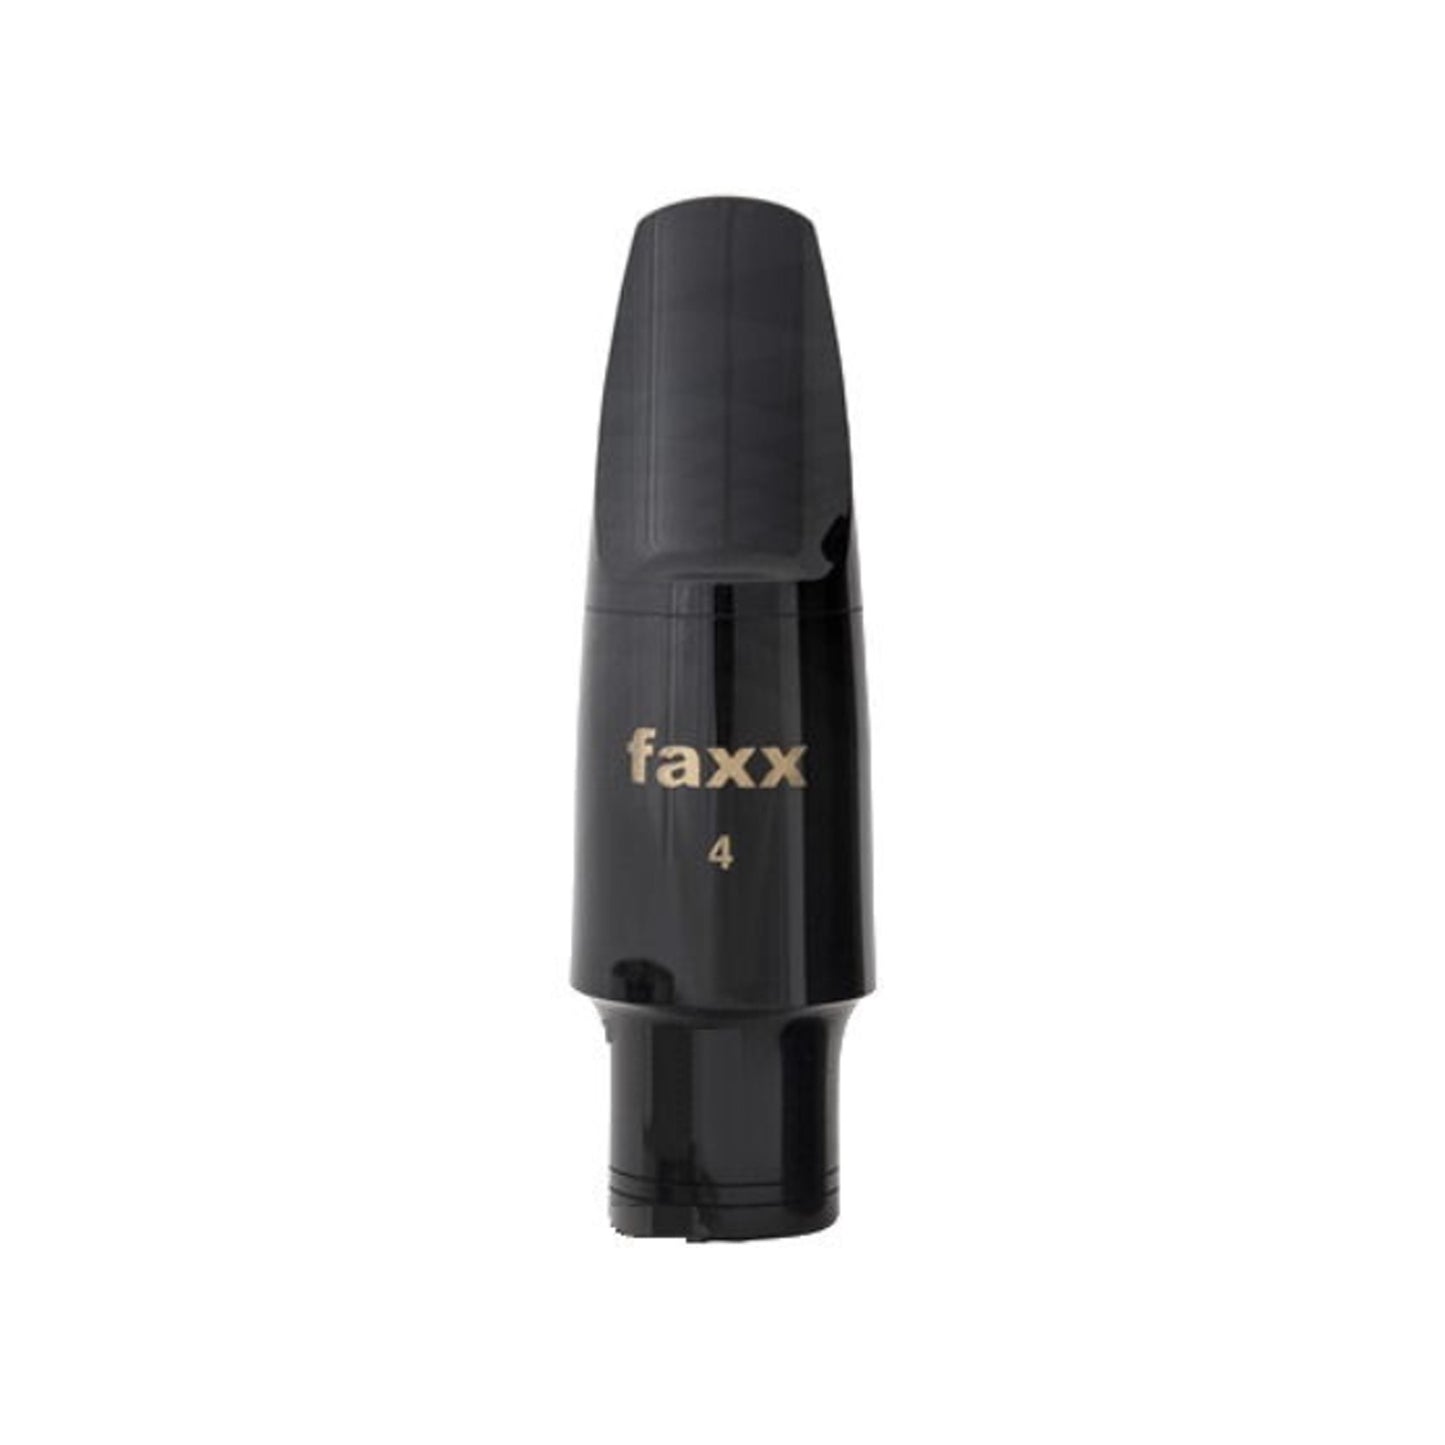 Faxx Tenor Sax Mouthpiece (#4)